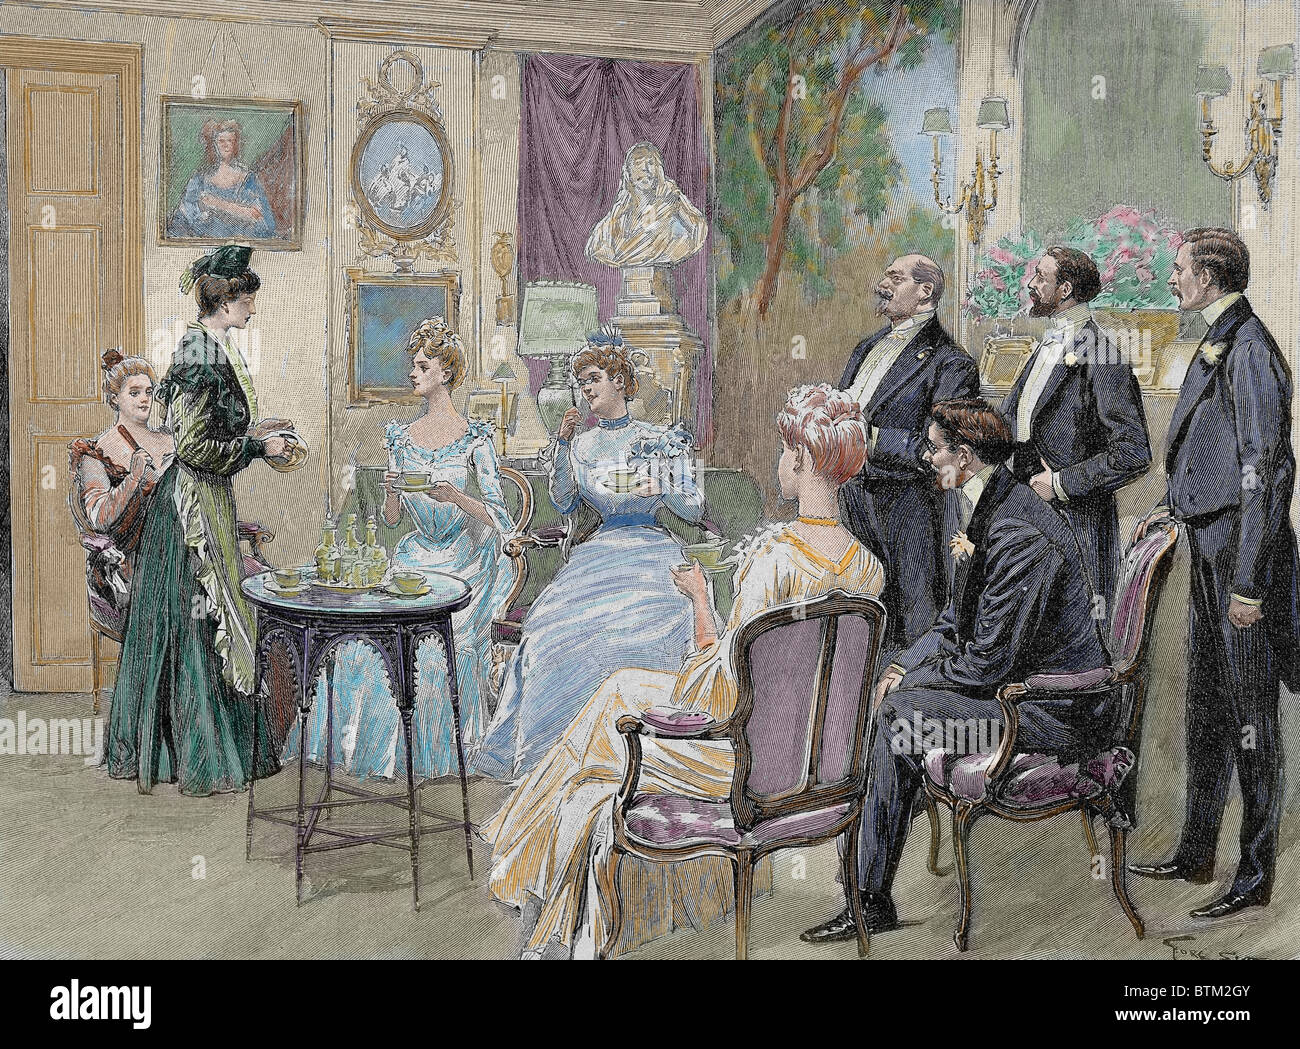 Reunión de familias aristocráticas en el salón. Grabado por George Scott, 1892. Coloración posterior. Foto de stock